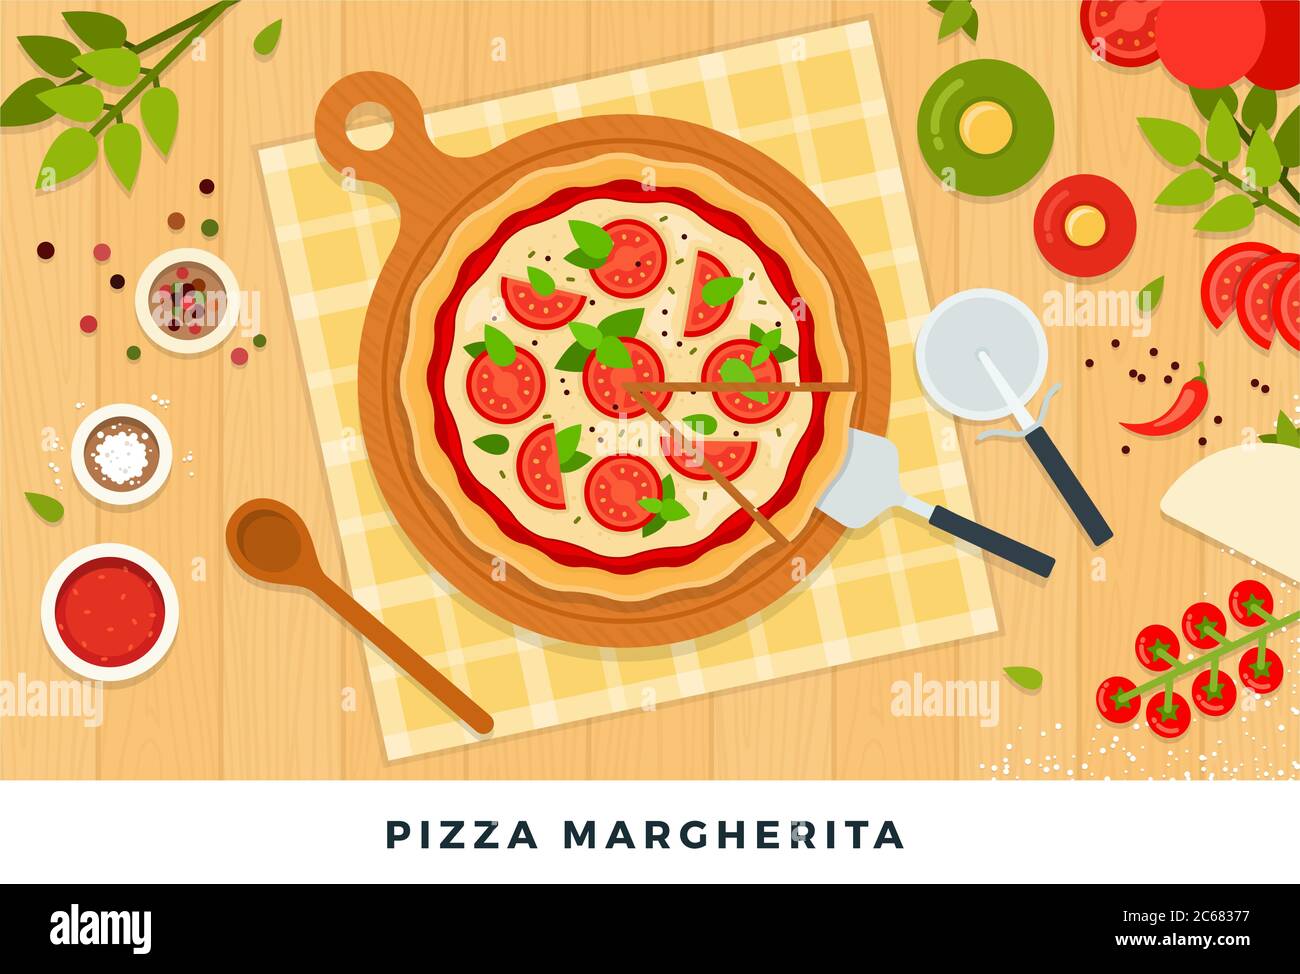 Pizza margherita con mozzarella, tomates e ingredientes para su preparación. Ilustraciones planas vectoriales. Ilustración del Vector